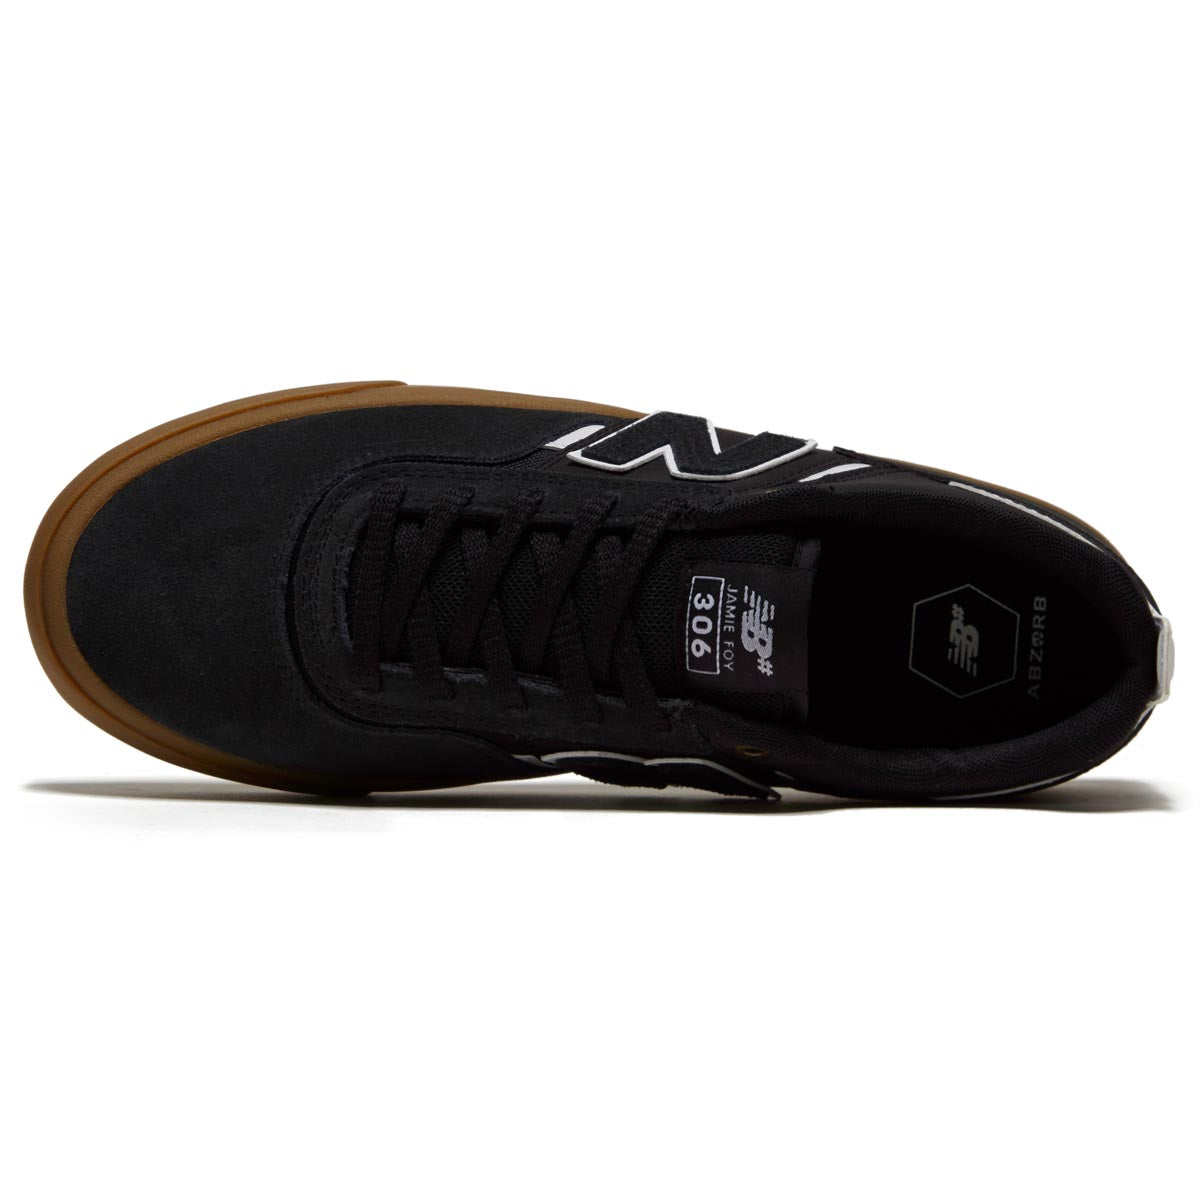 New Balance 306 Foy Shoes - Black/White/Gum image 3